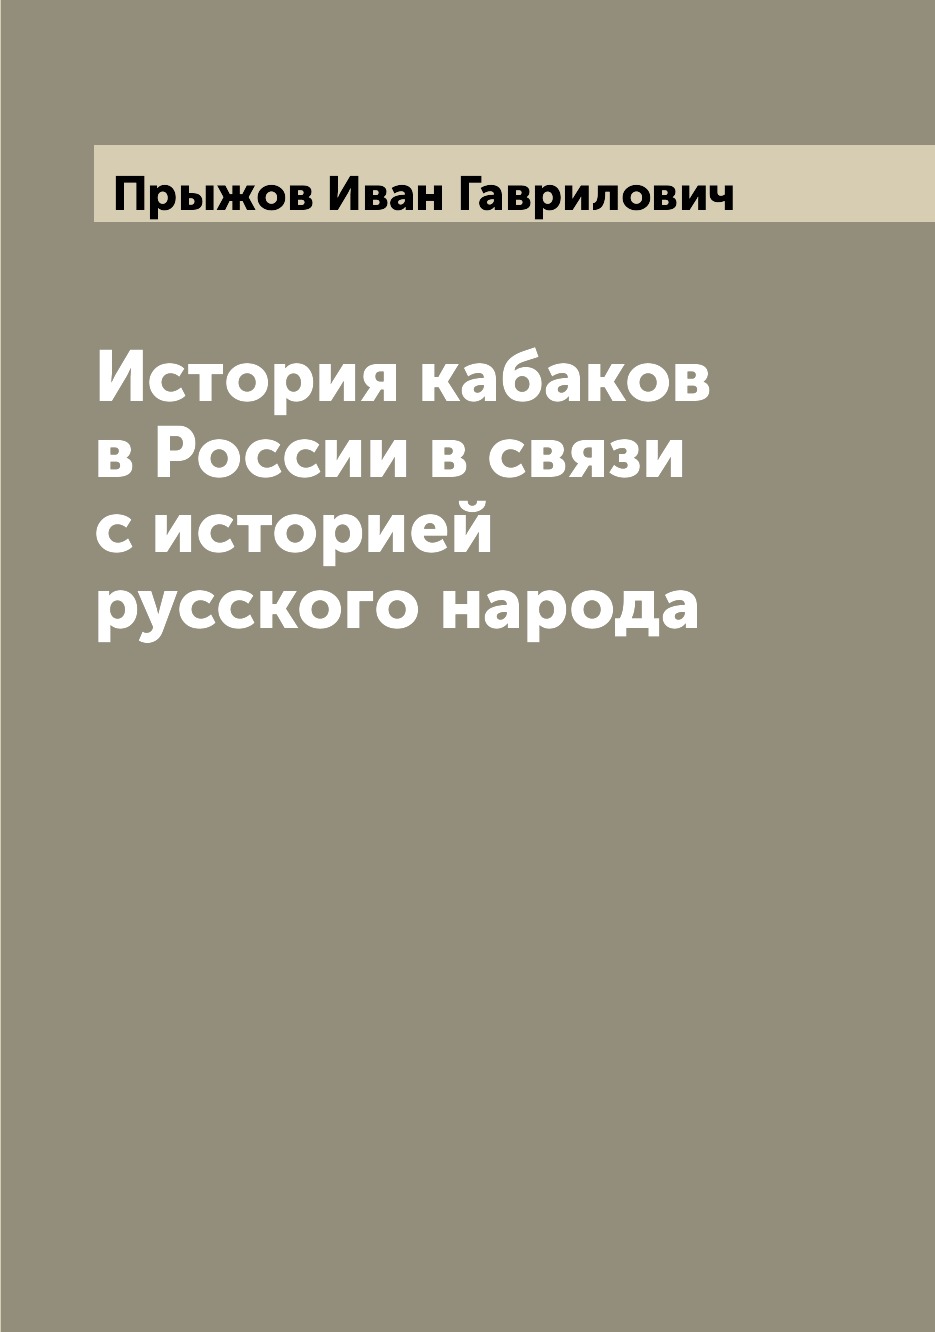 

Книга История кабаков в России в связи с историей русского народа